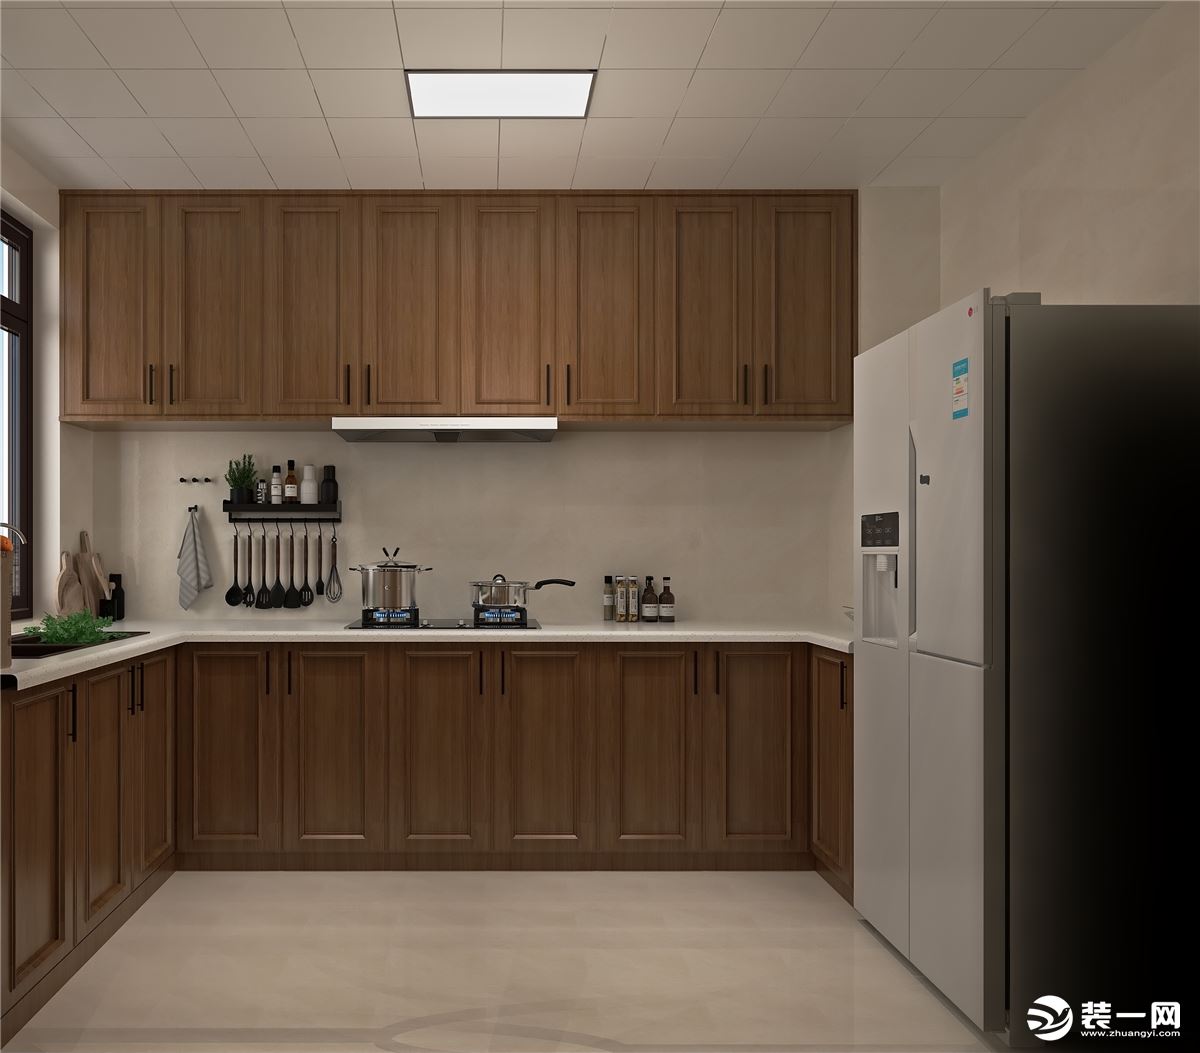 选择了欧派的整体厨房，地柜吊柜都选用胡桃木色板，与客餐厅的色调进行呼应，使空间在设计上更加统一。